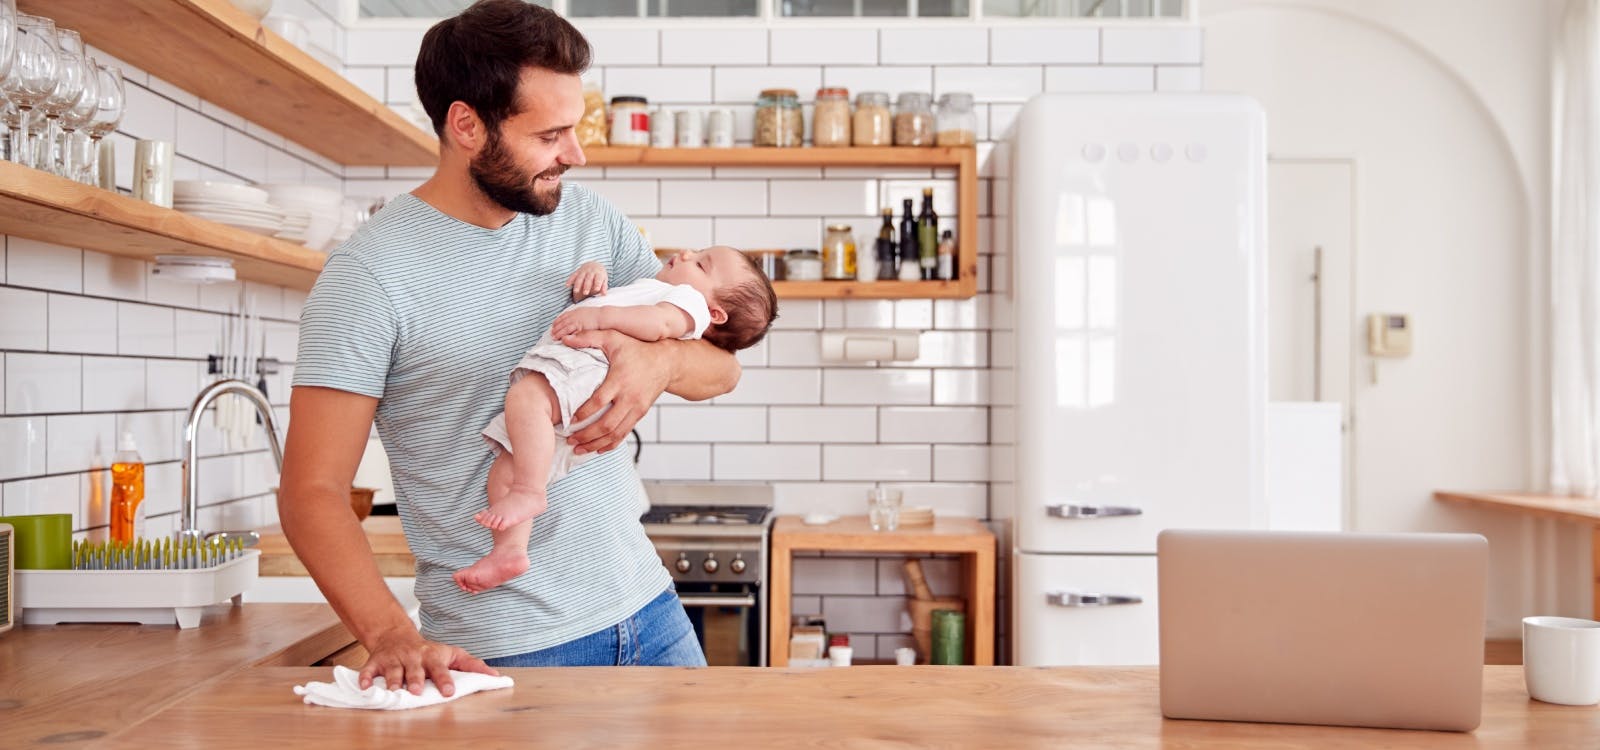 een vader lacht tegen de baby in zijn ene arm, terwijl hij met de andere hand het aanrecht schoonmaakt